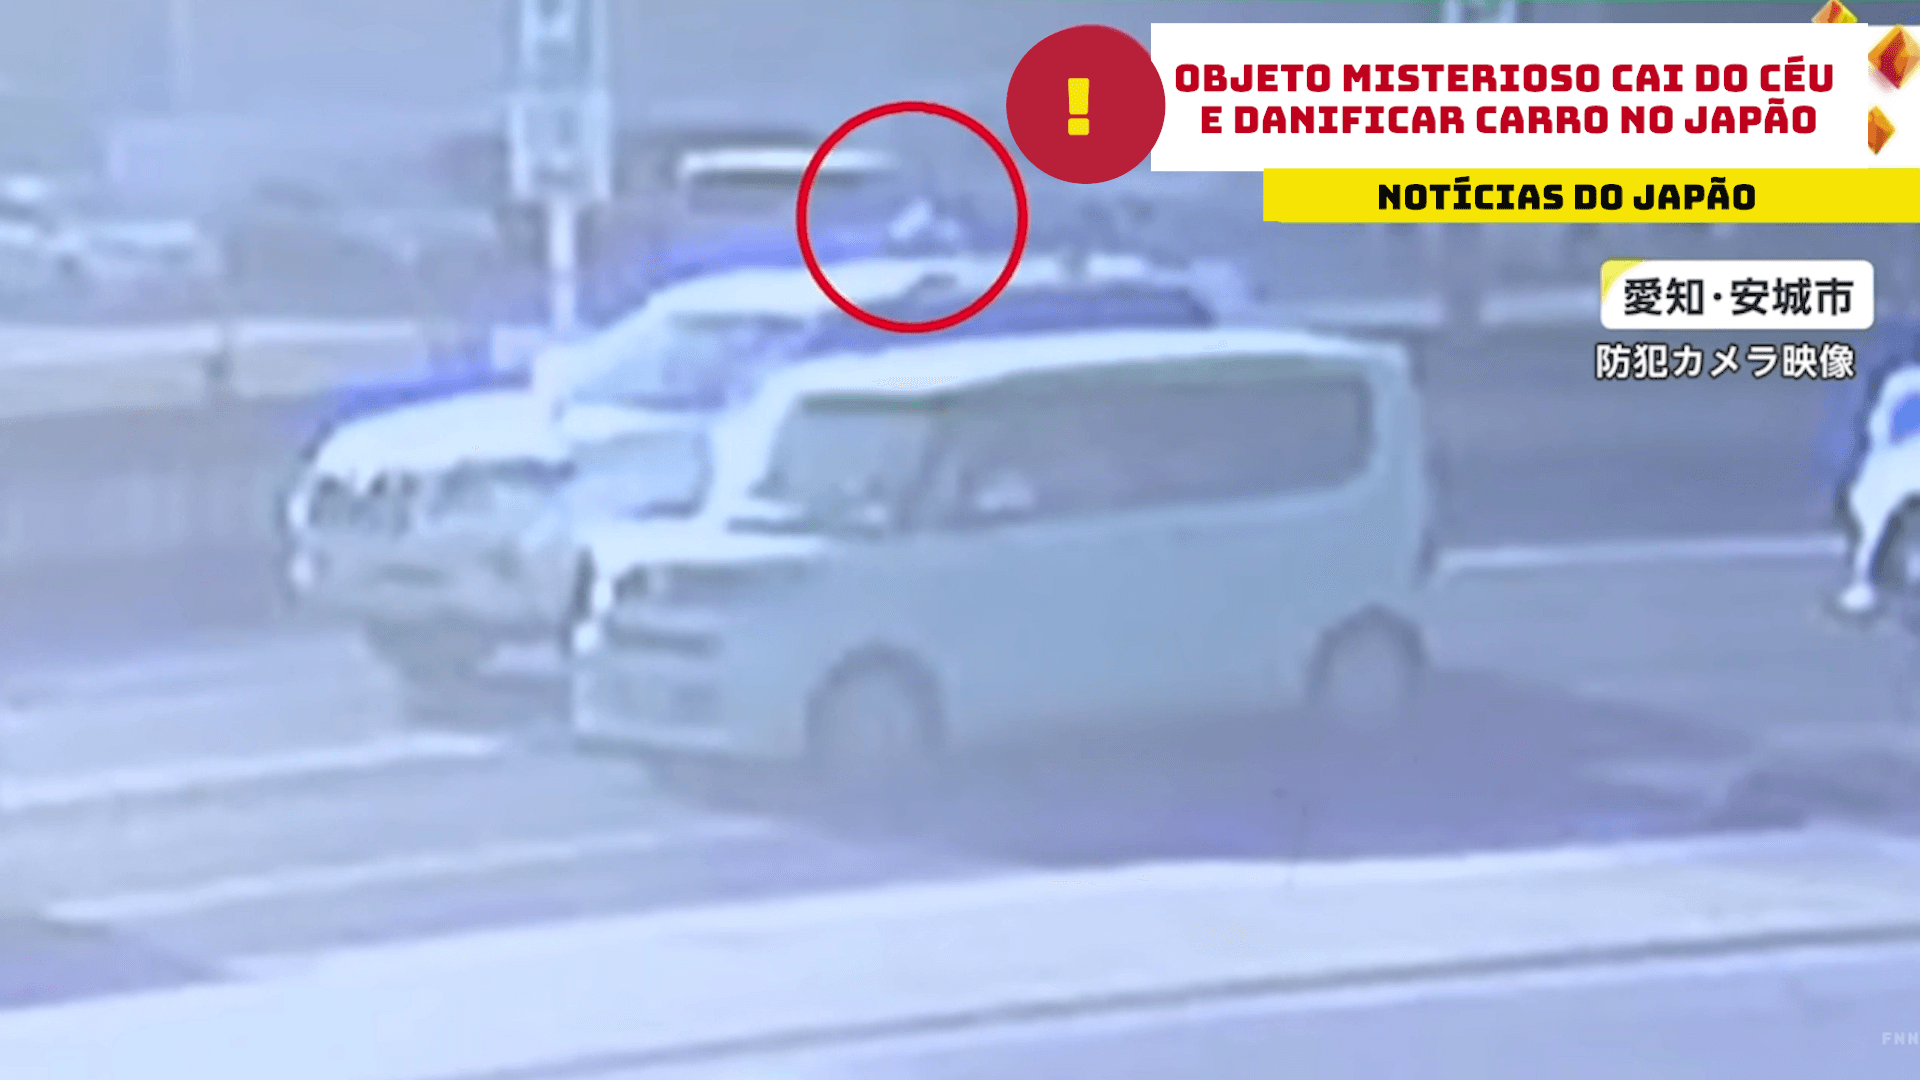 Objeto misterioso cai do céu e danificar carro no Japão